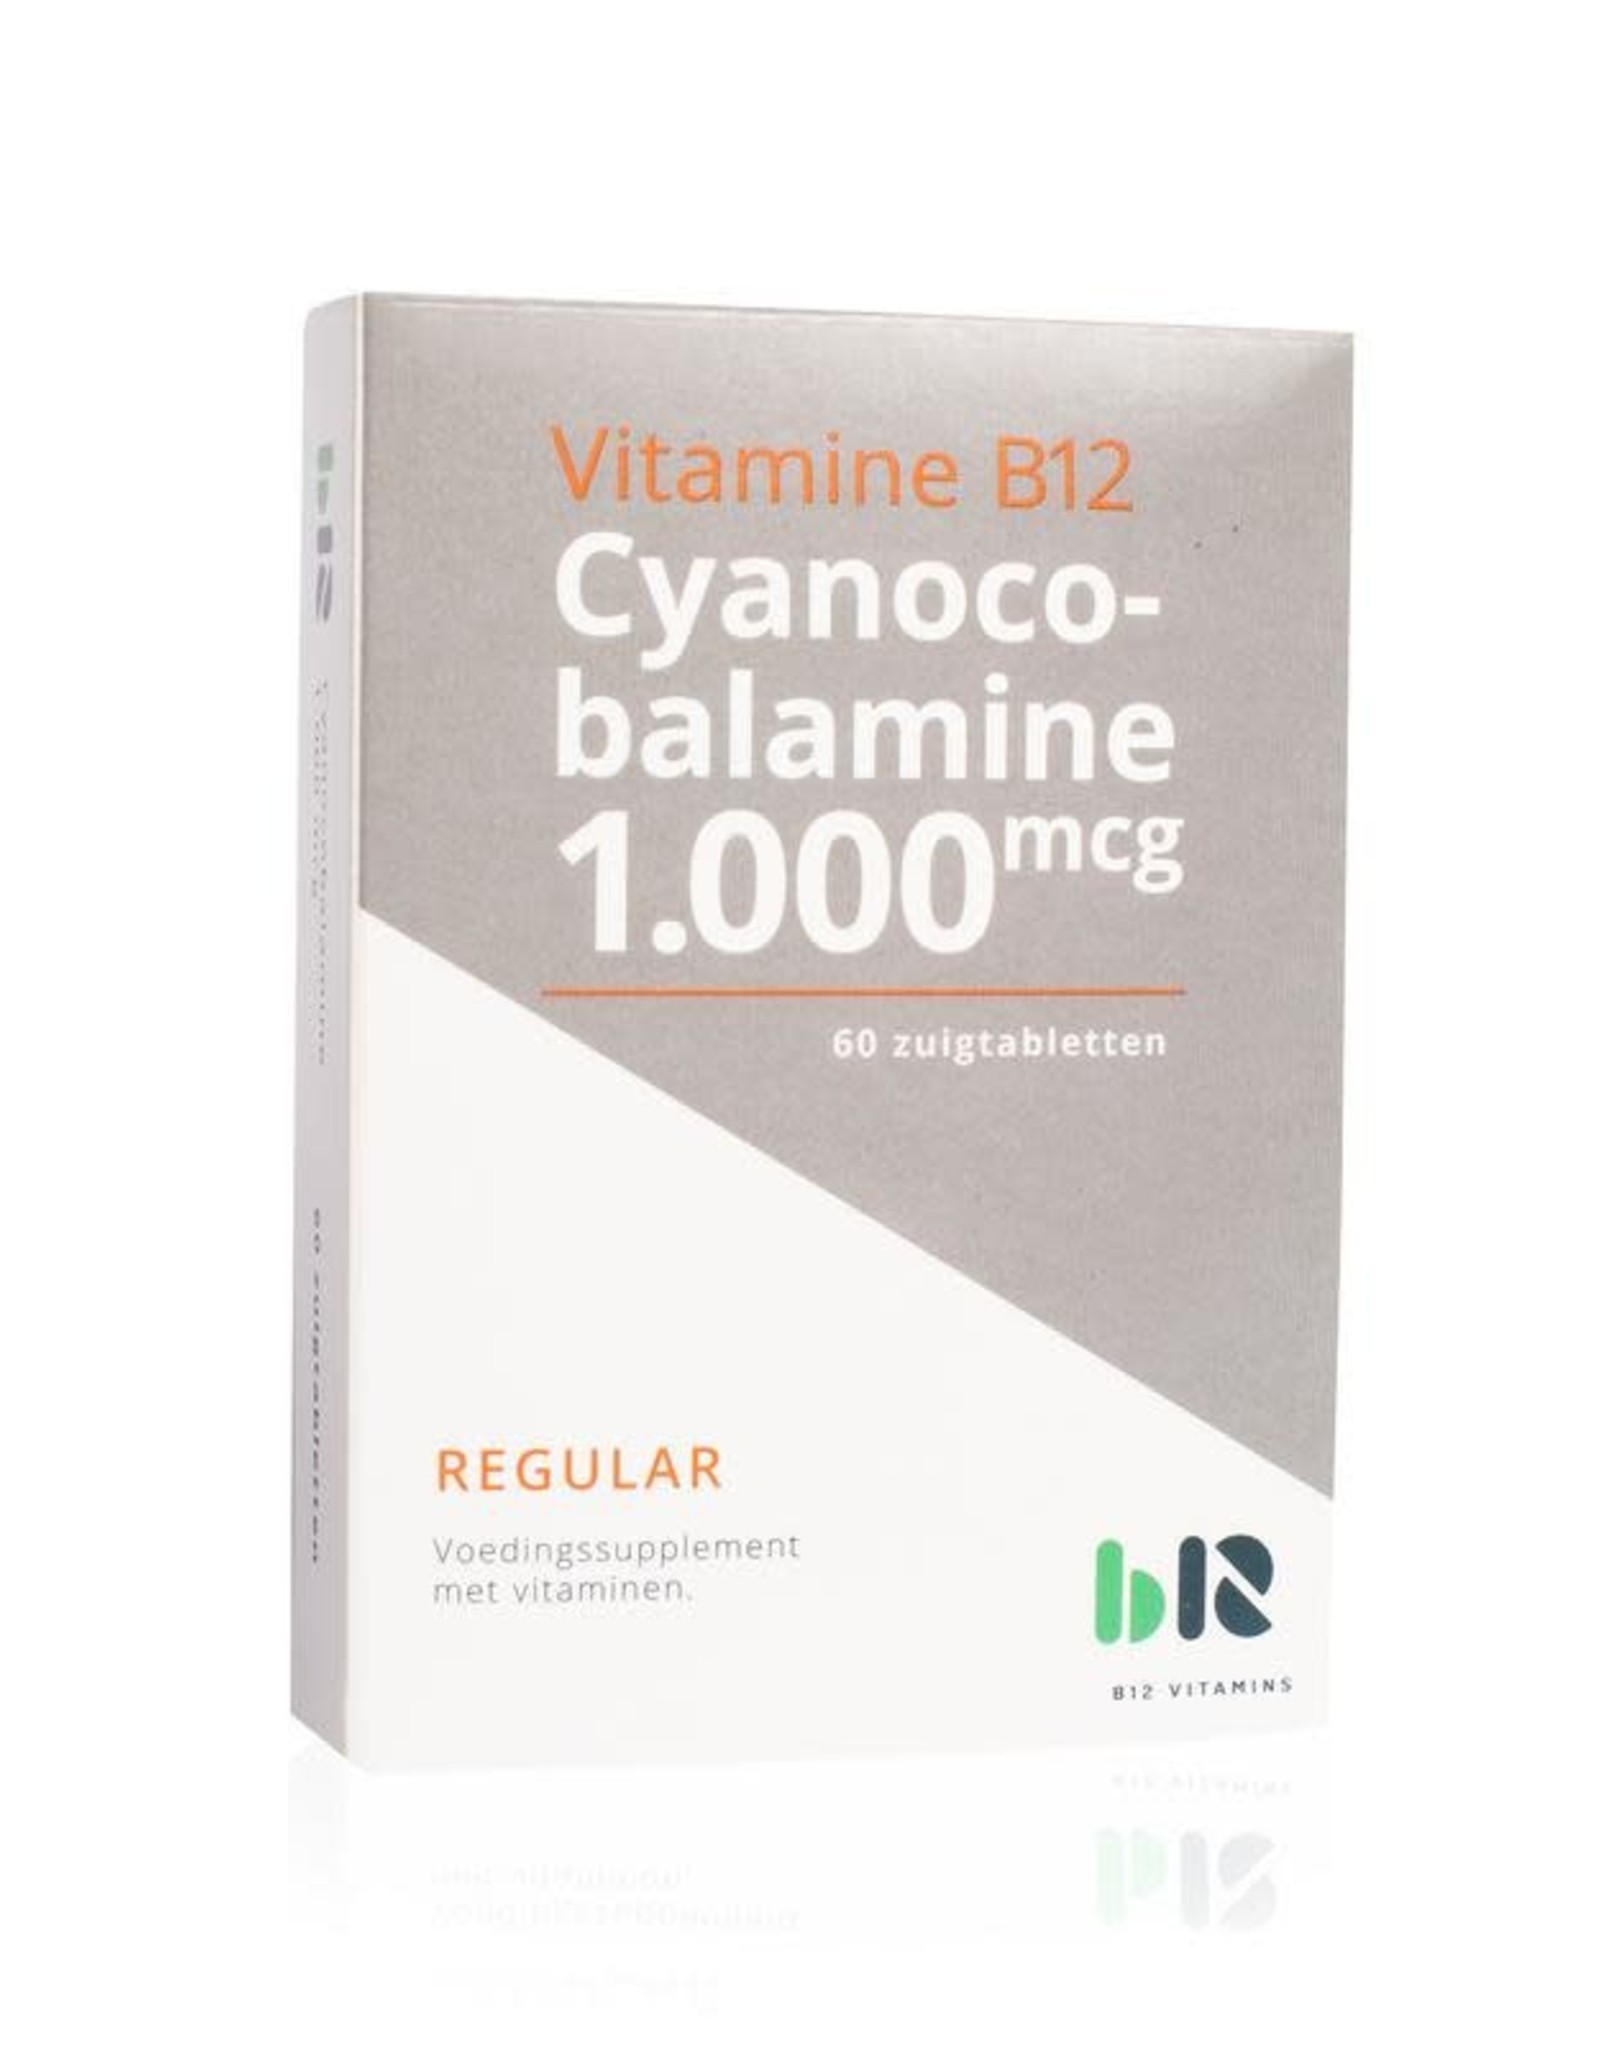 Profeet Factuur van Cyanocobalamine 1000 - 60 zuigtabletten - Roos met witte Stippen